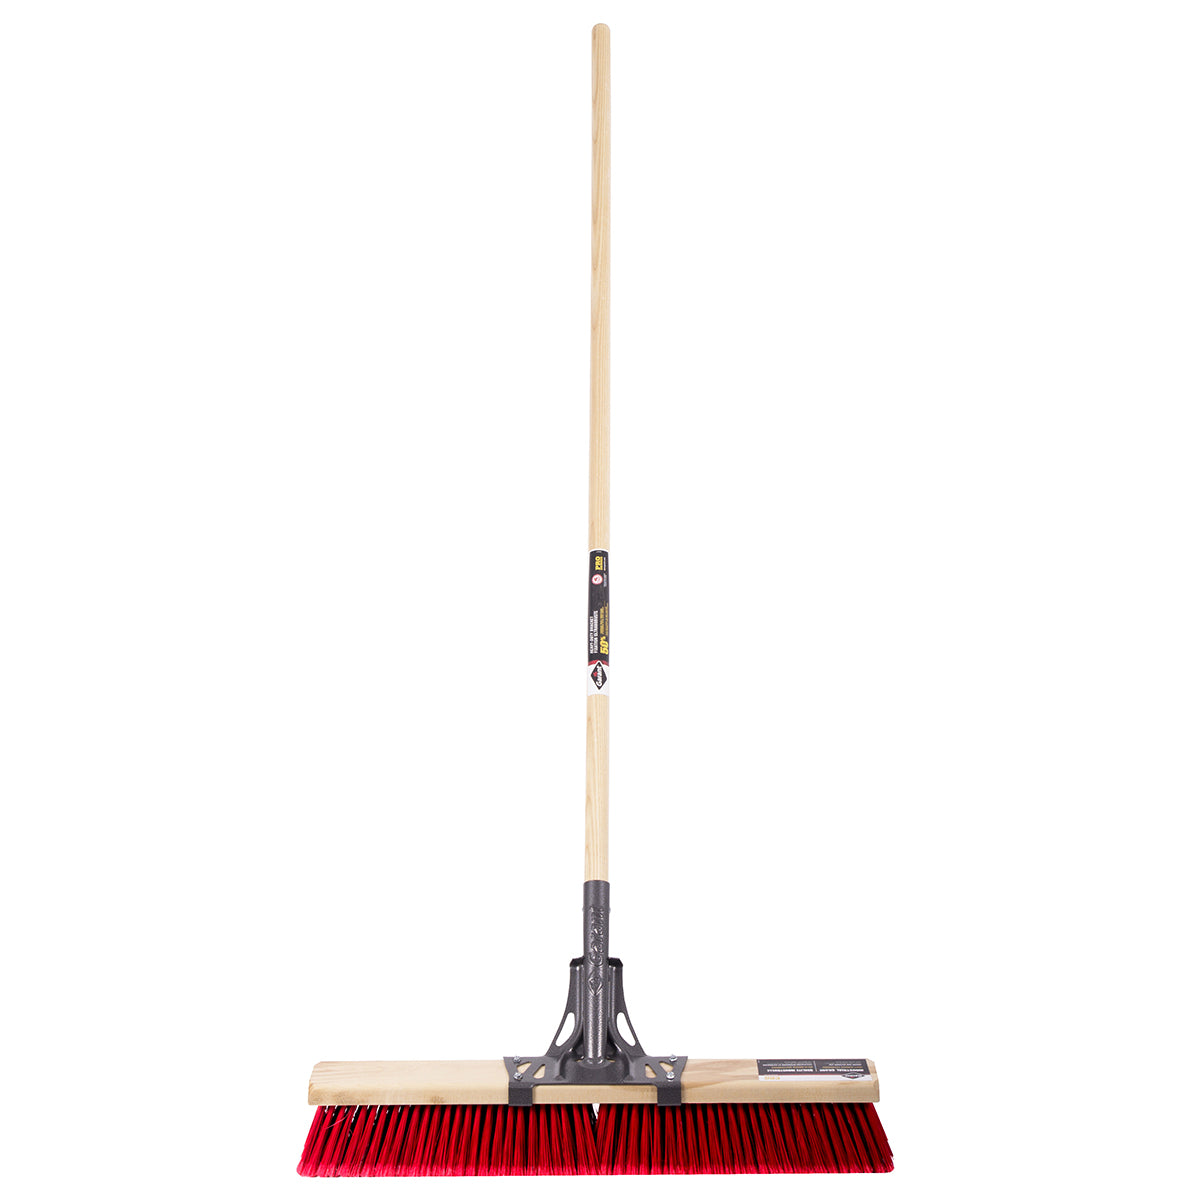 Push broom, 24", multi, wood hdl